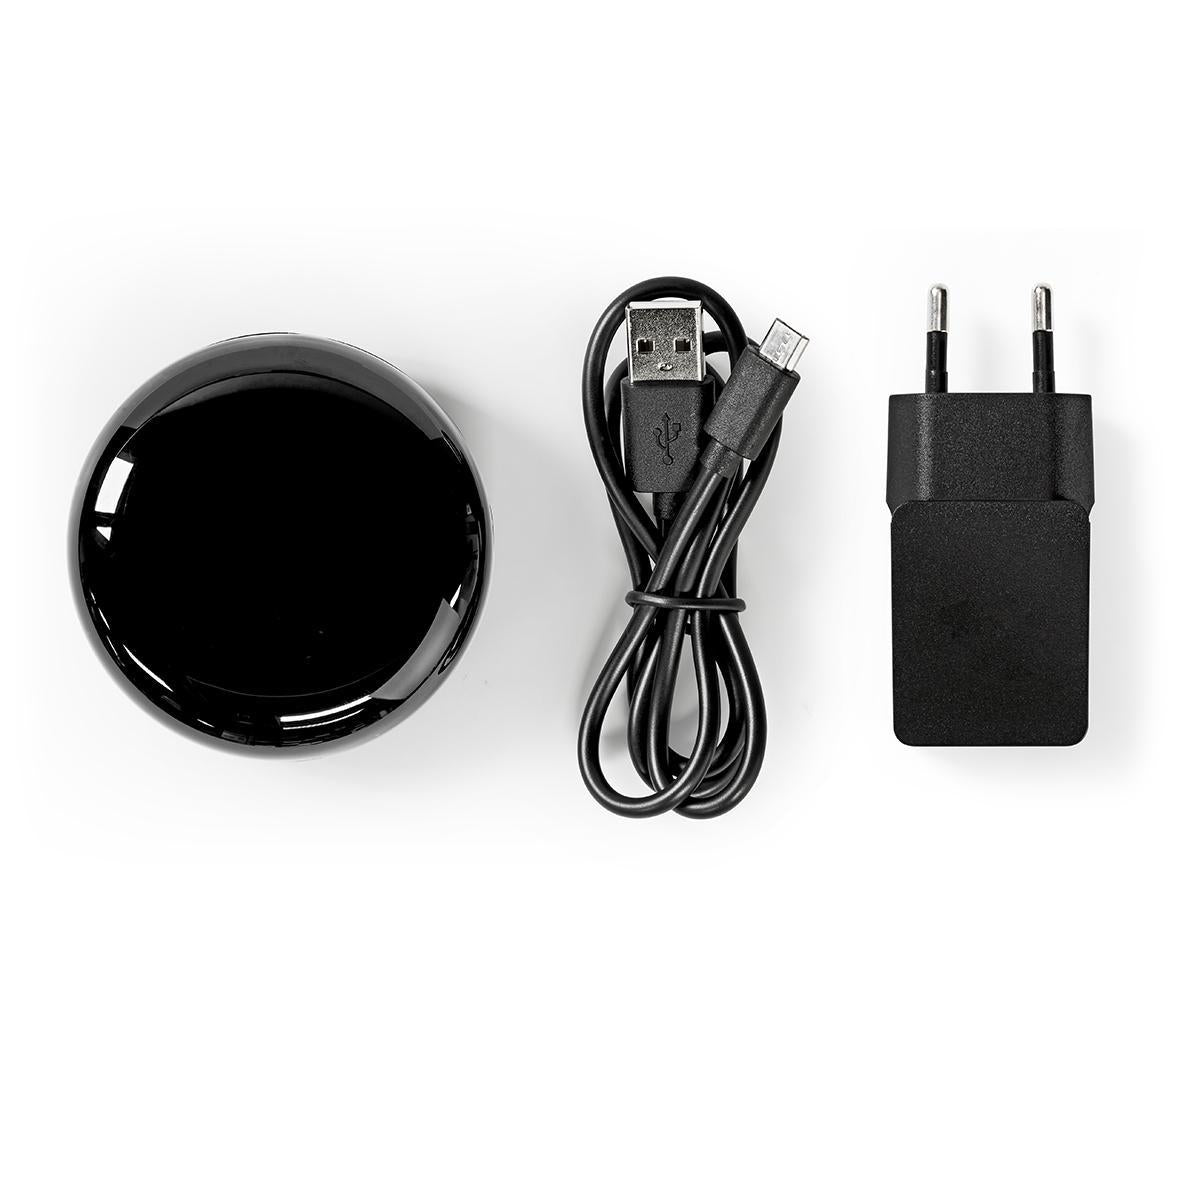 SmartLife IR-Fernbedienung | Wi-Fi | Universal | Signalreichweite: 5 m | 38 KHz | Stromversorgung über USB | Android™ / IOS | Schwarz